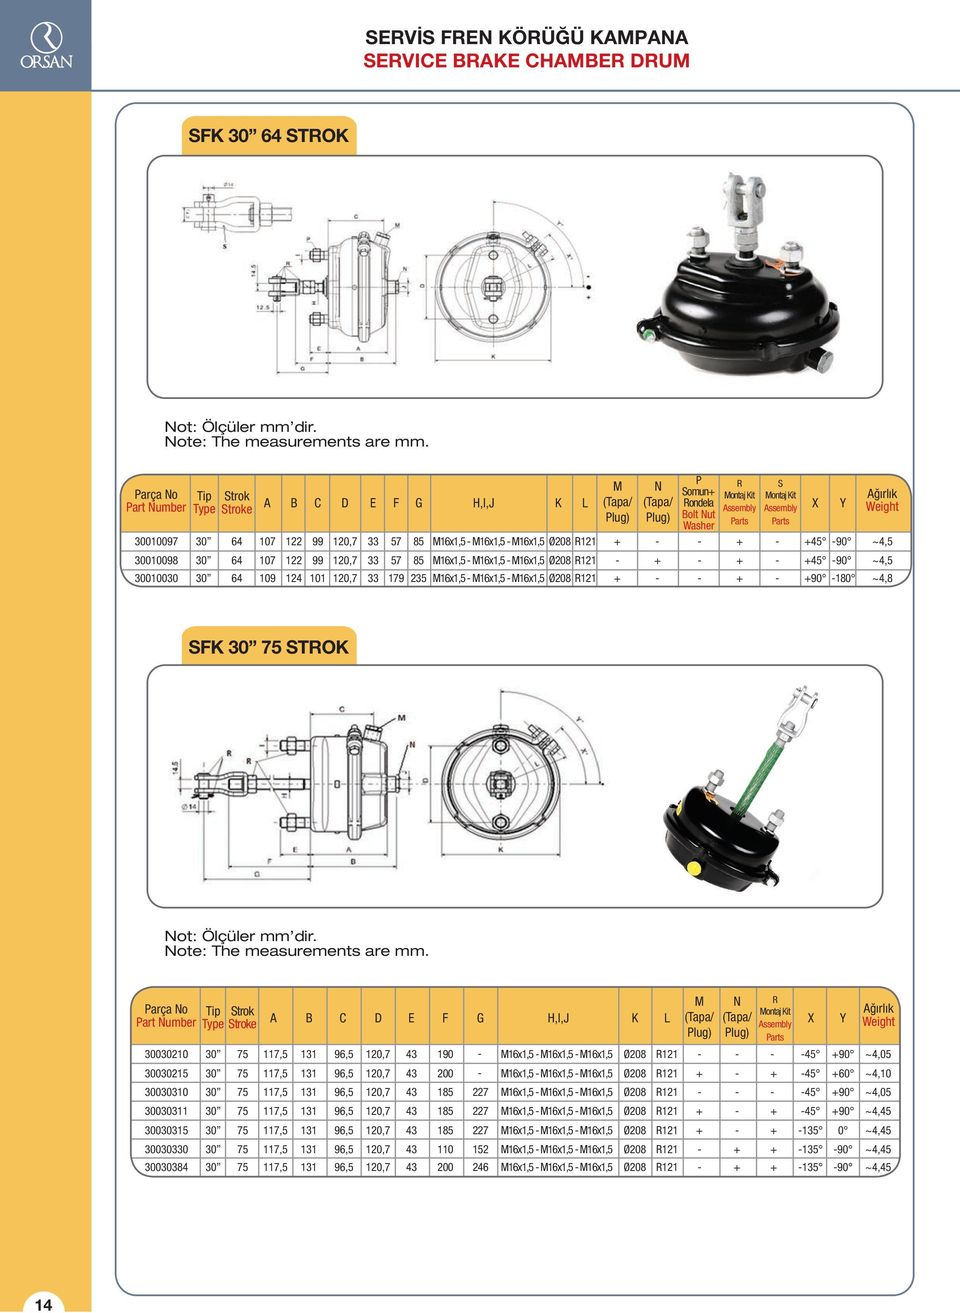 R121 M (Tapa/ Plug) N (Tapa/ Plug) P Somun Rondela Bolt Nut Washer R Montaj Kit Assembly Parts S Montaj Kit Assembly Parts Y 45 9 45 9 9 18 Ağırlık Weight ~4,5 ~4,5 ~4,8 SFK 30 75 STROK Not: Ölçüler